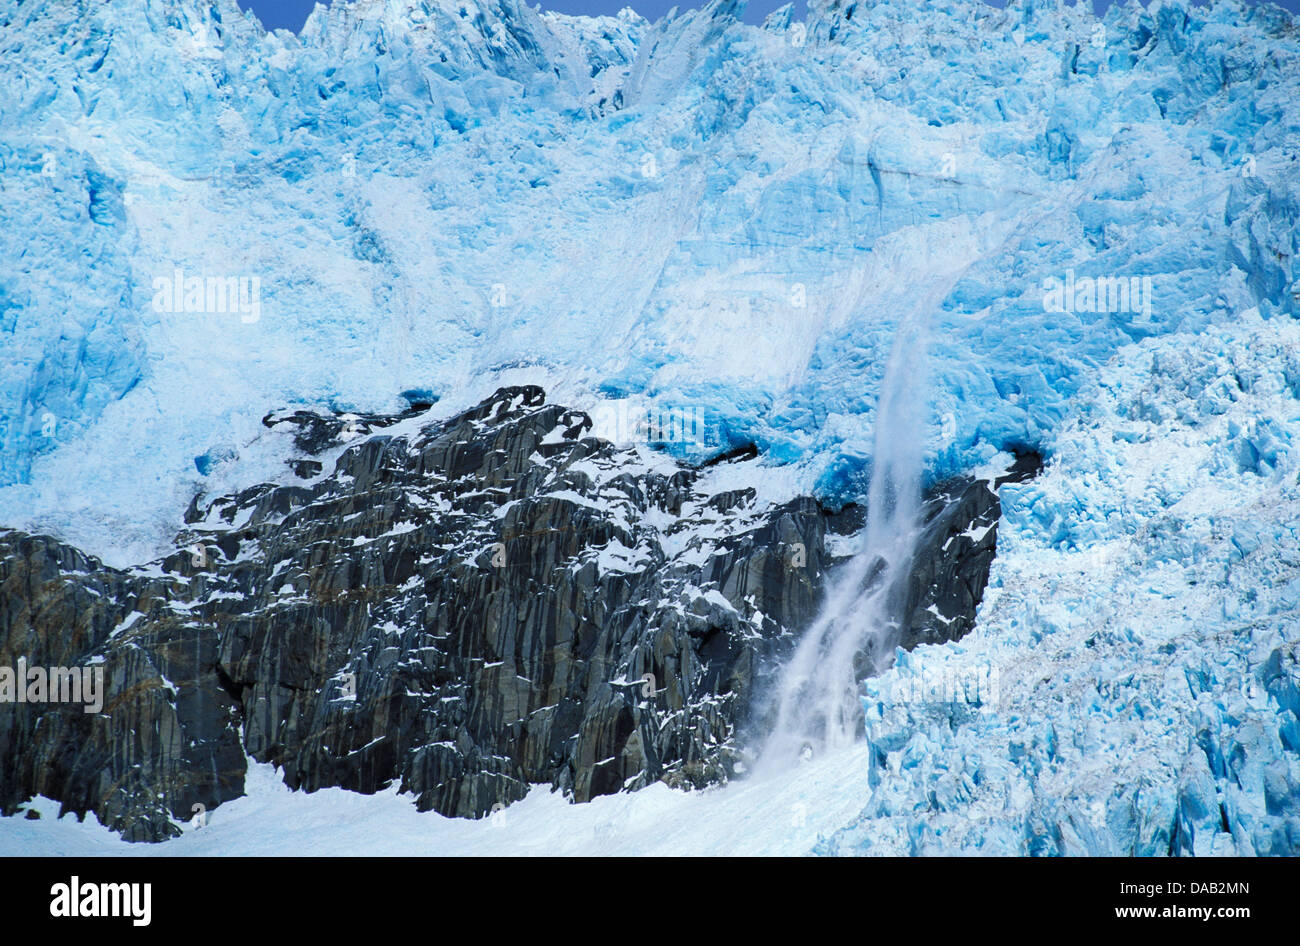 Nordwestlichen Gletscher, Kenai Fjords National Park, Alaska, USA, Gletscher, Eis, Schnee, Kälte, blau, Riss, schneit, Herbst, Wasser, roc Stockfoto